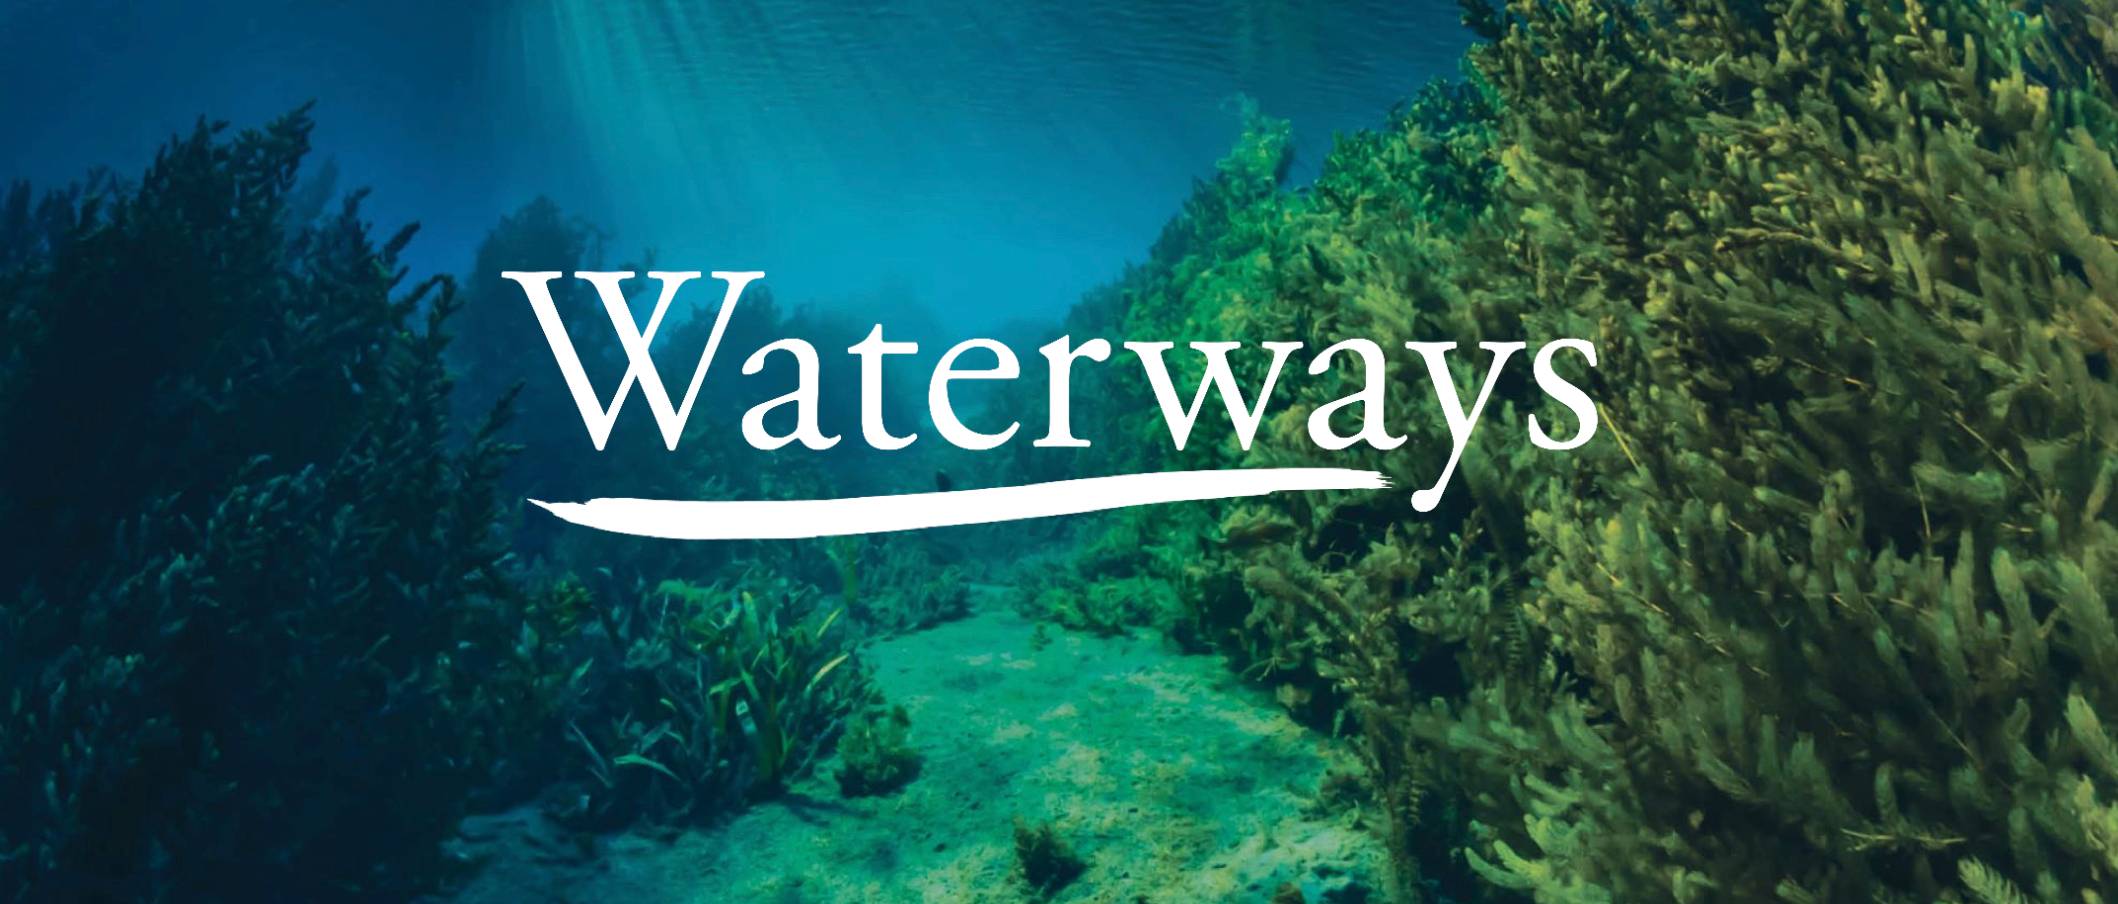 waterways banner